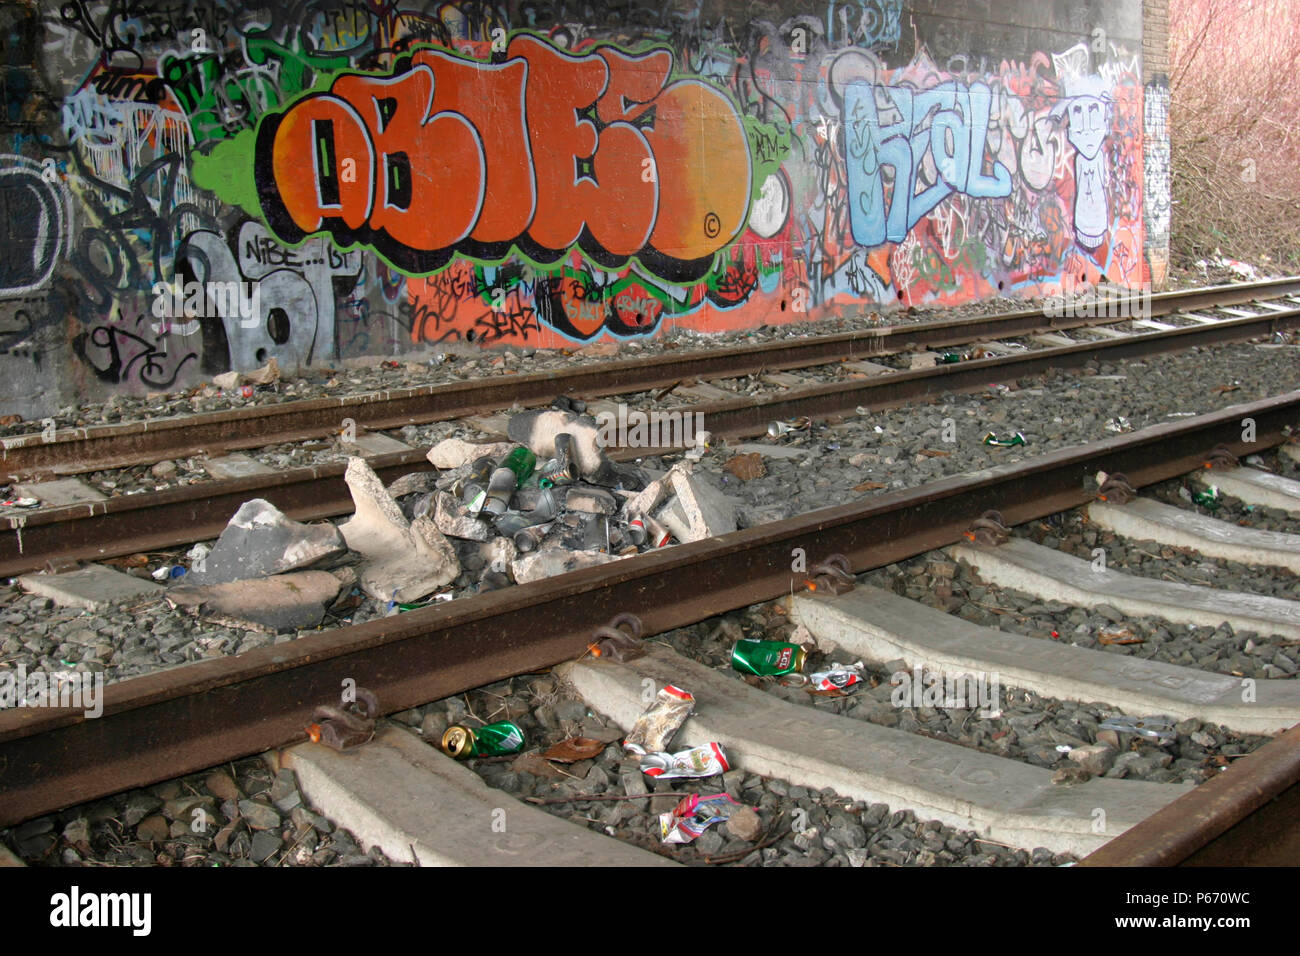 Die Arbeit der Vandalen, Alkoholiker, und Drogenkonsumenten auf der stillgelegten Bahnstrecke. 2004 Stockfoto